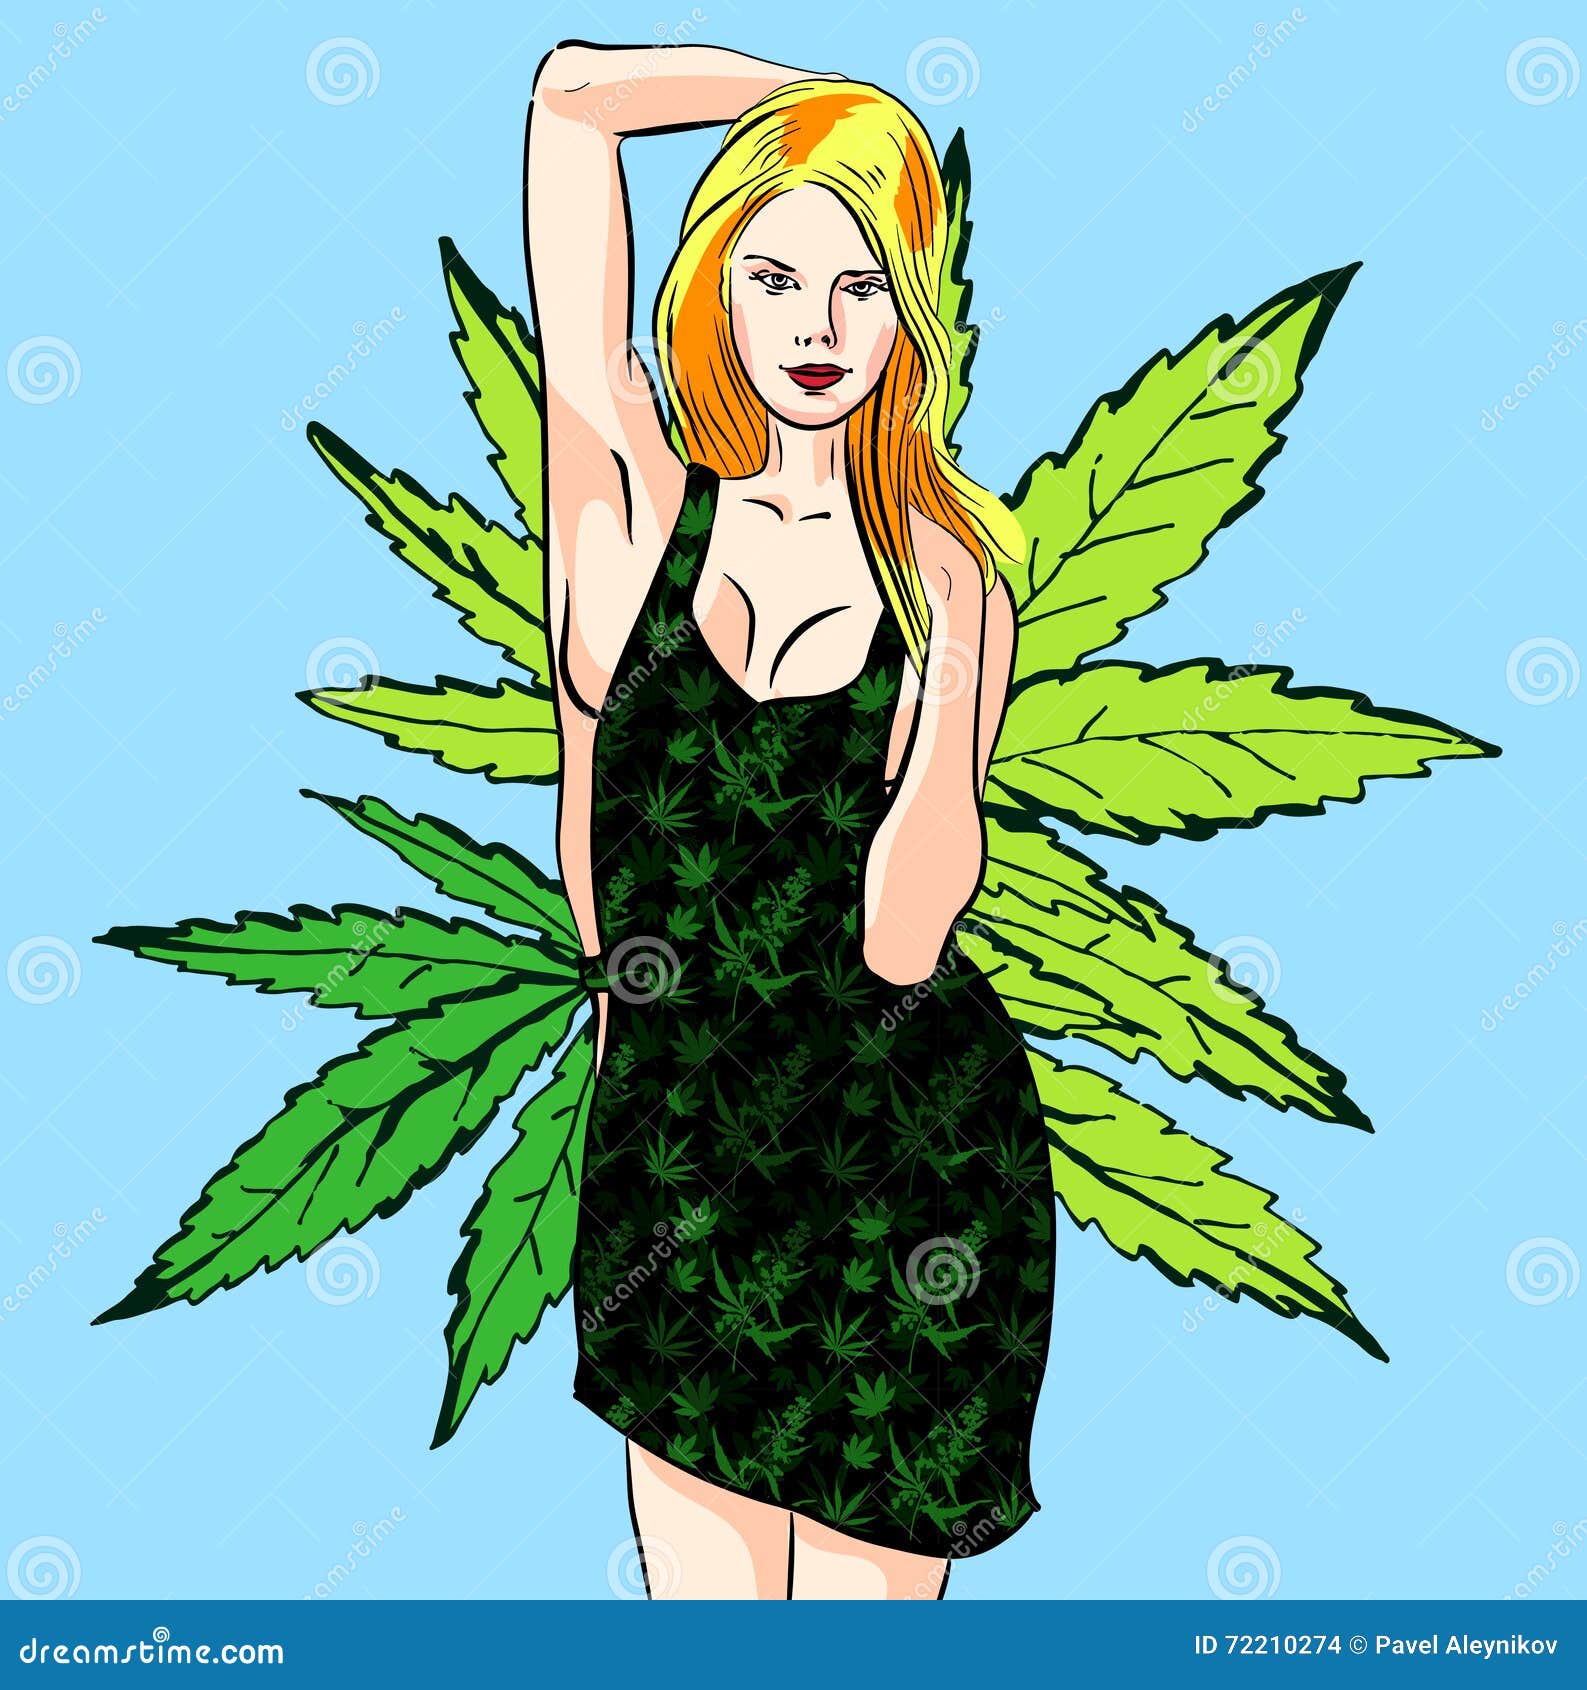 Картинка девушка с марихуаной конопля приготовить химку